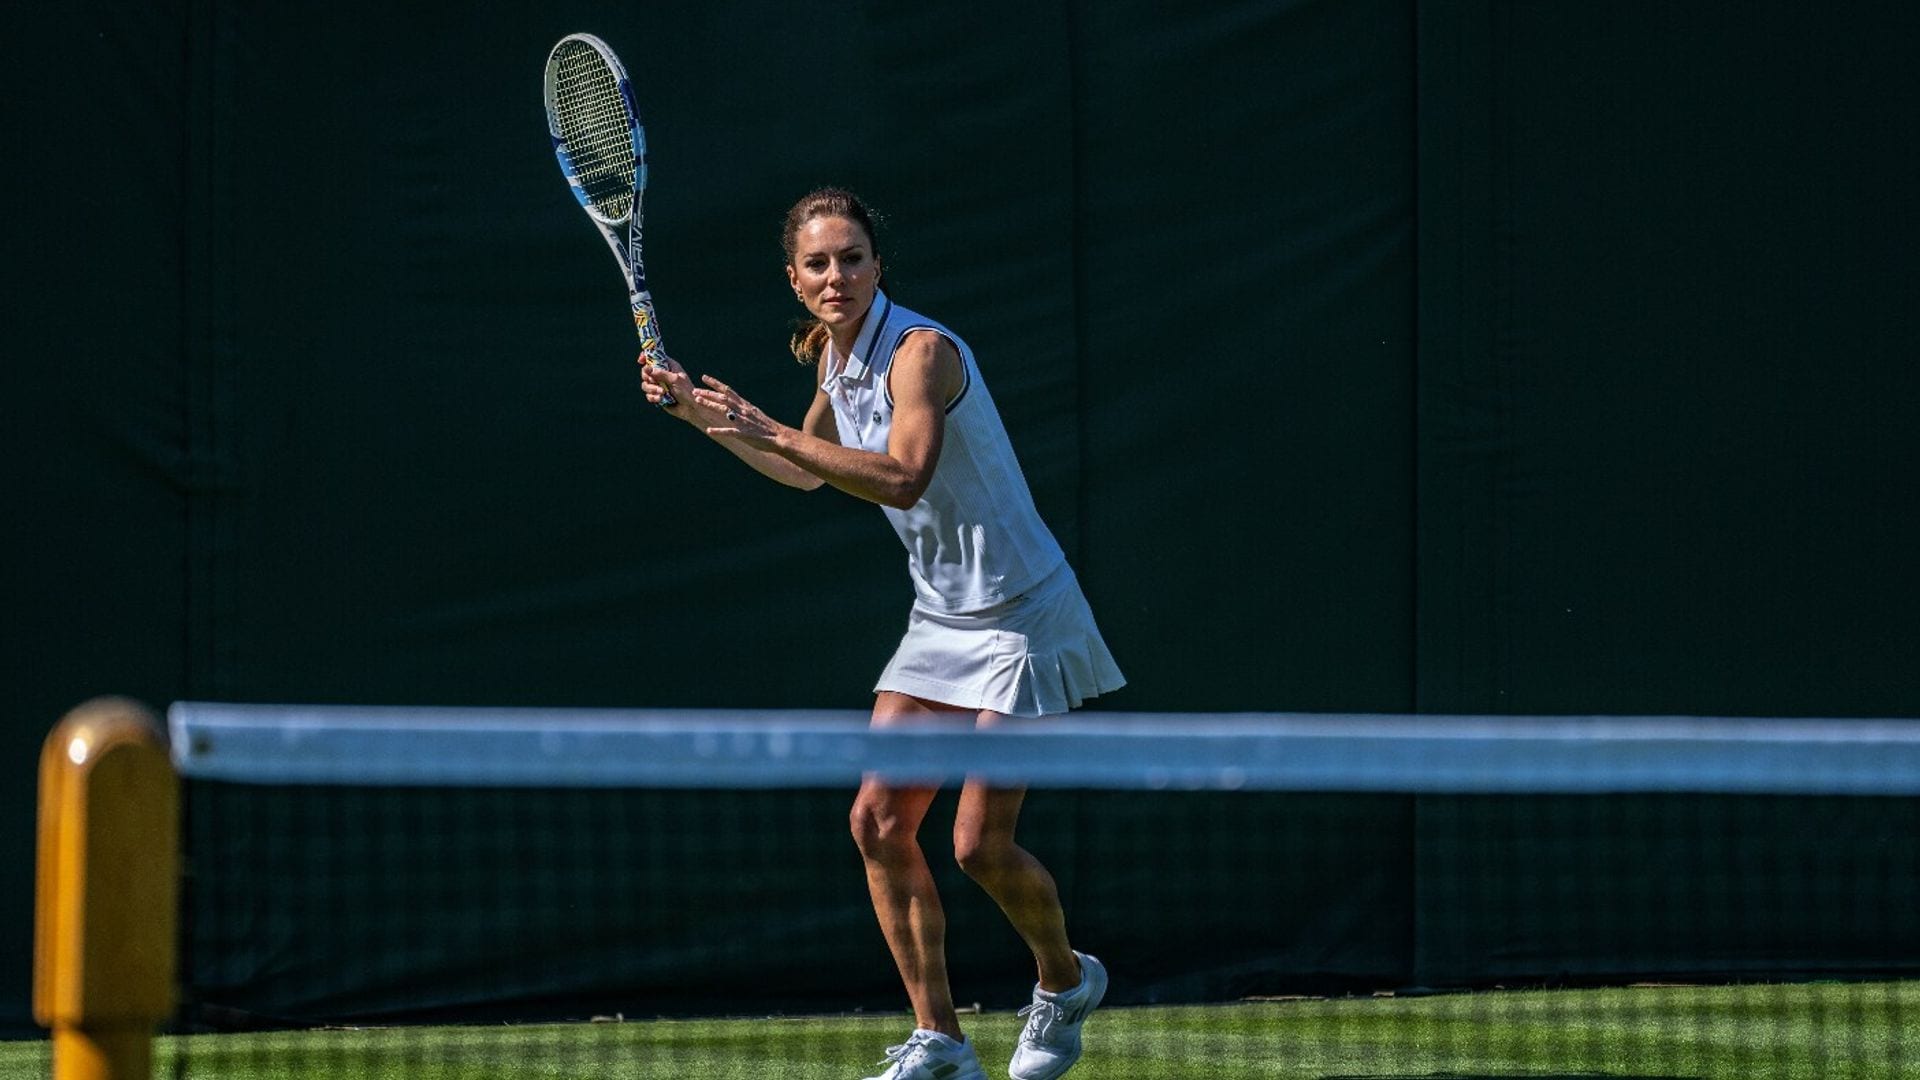 Vestida de blanco y con una figura atlética, Kate Middleton se viste de corto para jugar tenis